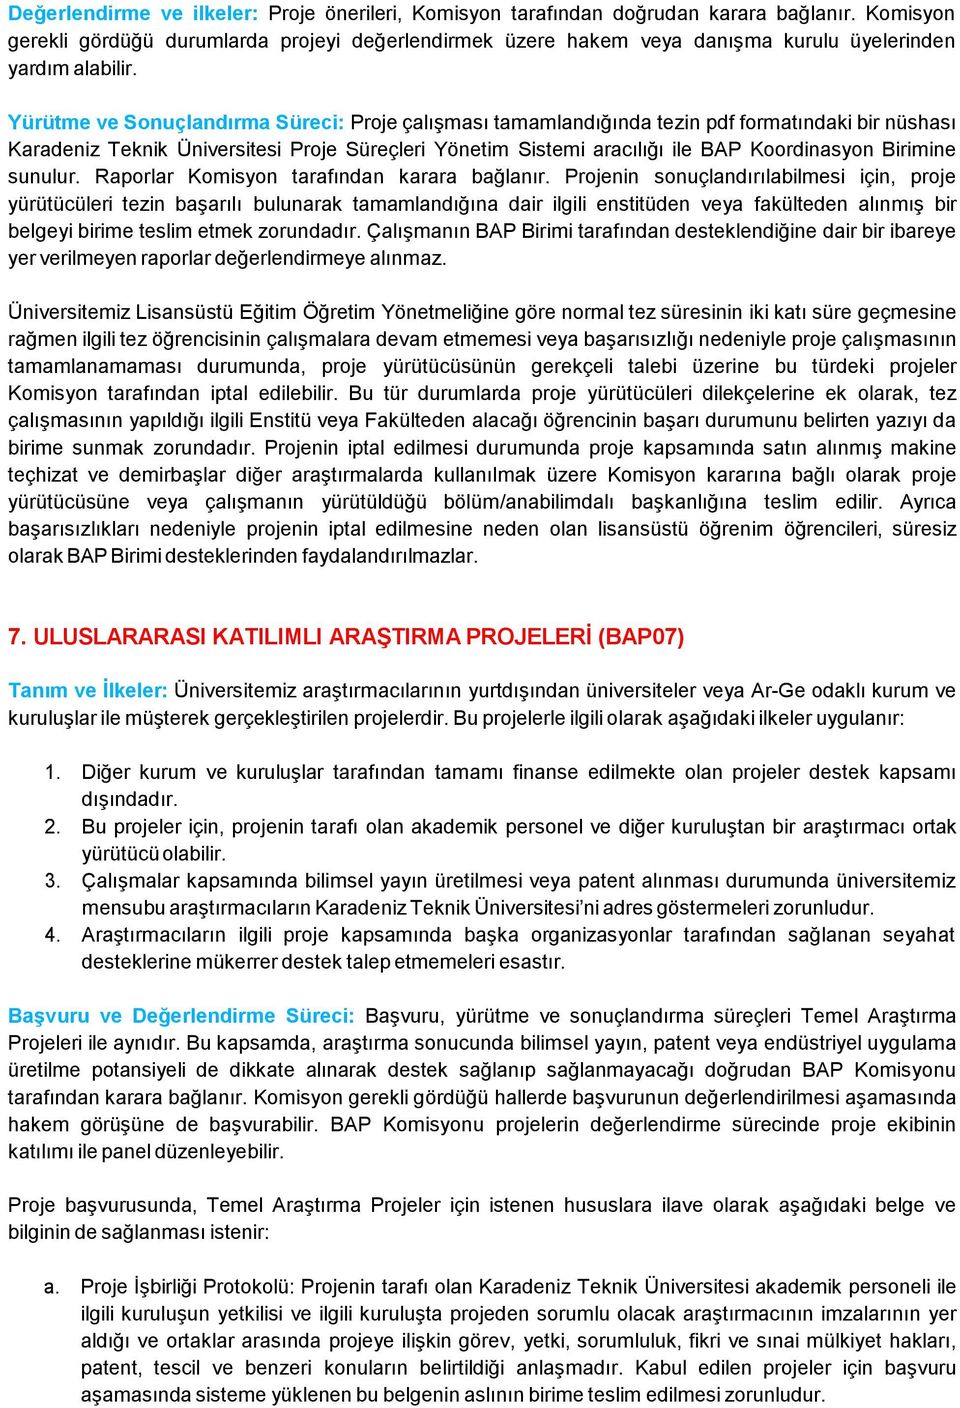 Yürütme ve Sonuçlandırma Süreci: Proje çalışması tamamlandığında tezin pdf formatındaki bir nüshası Karadeniz Teknik Üniversitesi Proje Süreçleri Yönetim Sistemi aracılığı ile BAP Koordinasyon